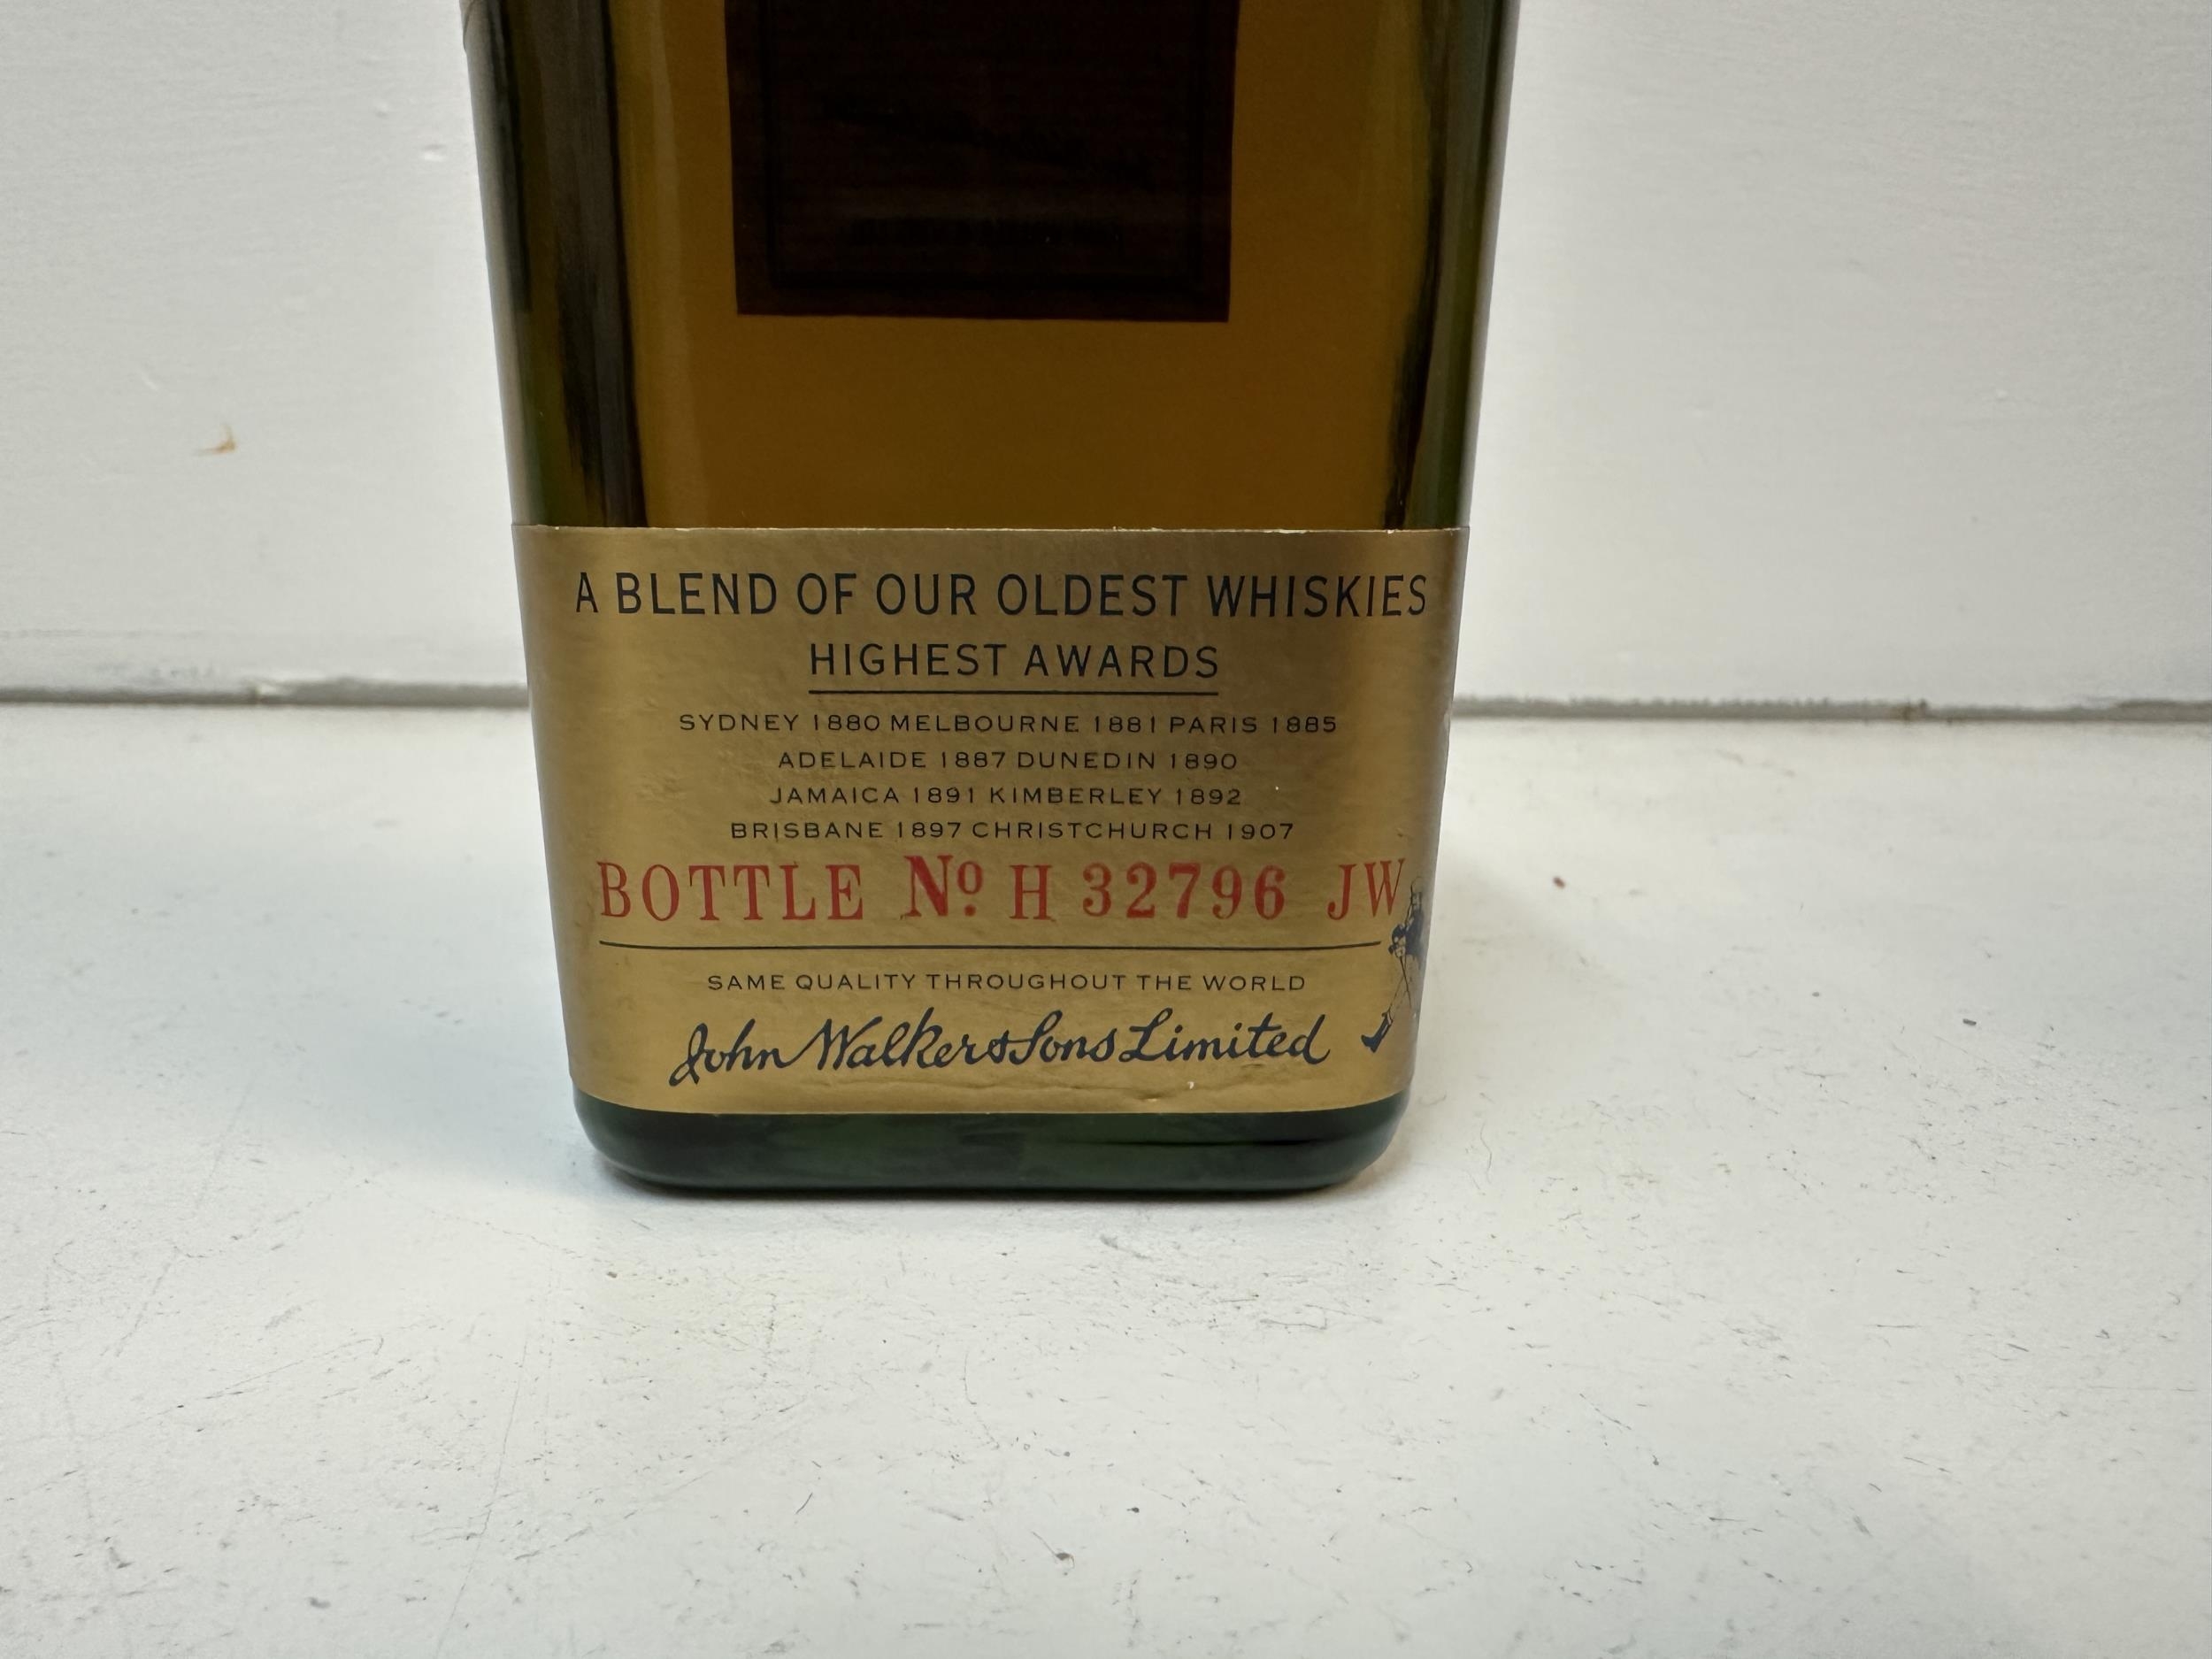 Johnnie Walker Oldest 1820 Scotch whisky, bottle no H32796 JW - Image 4 of 4